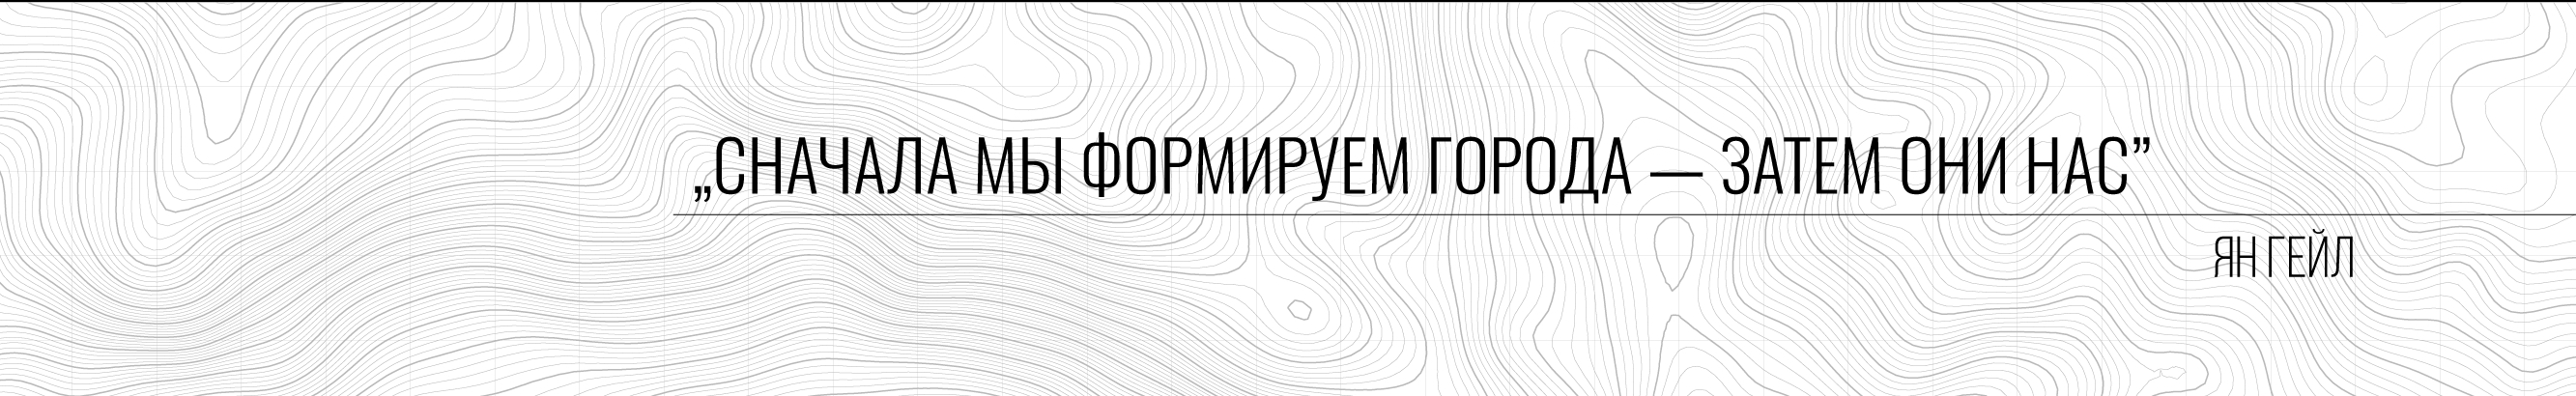 Тогрул Агаев's profile banner